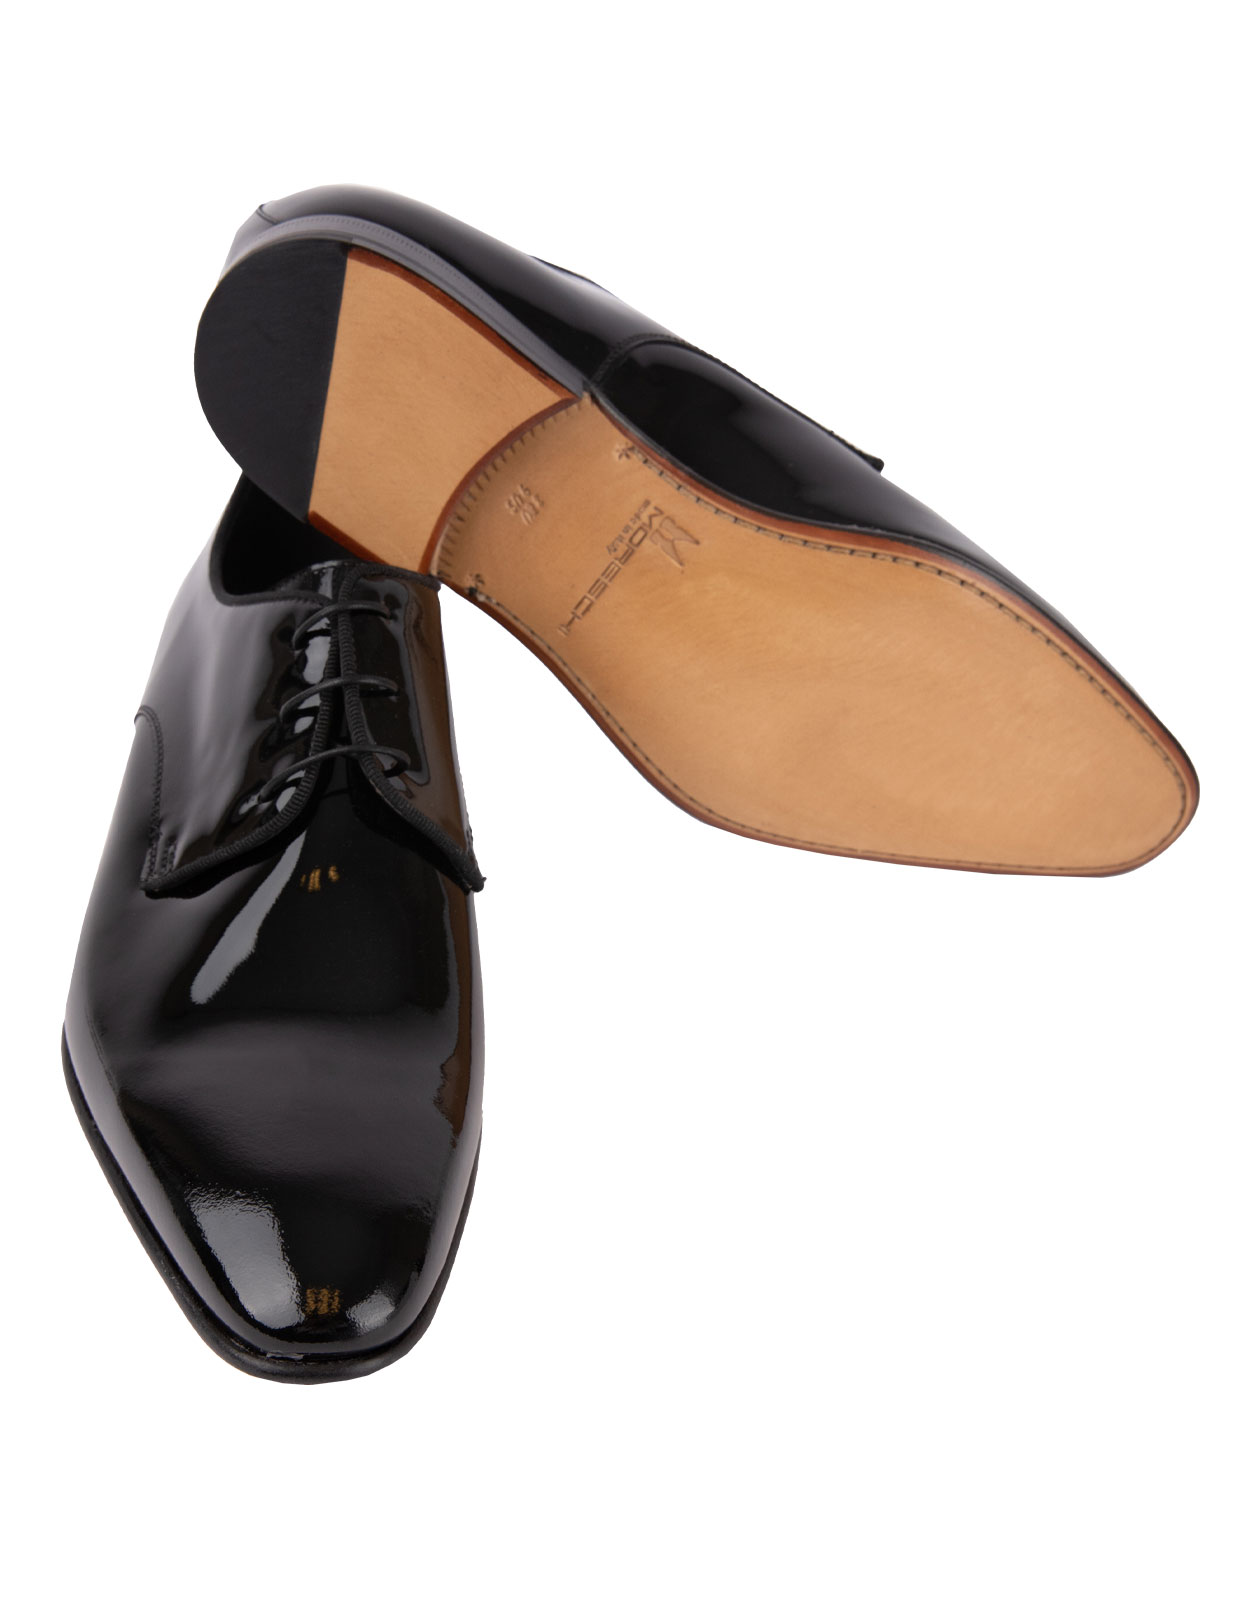 Linz Patent Leather Derby Shoes Black Stl 8